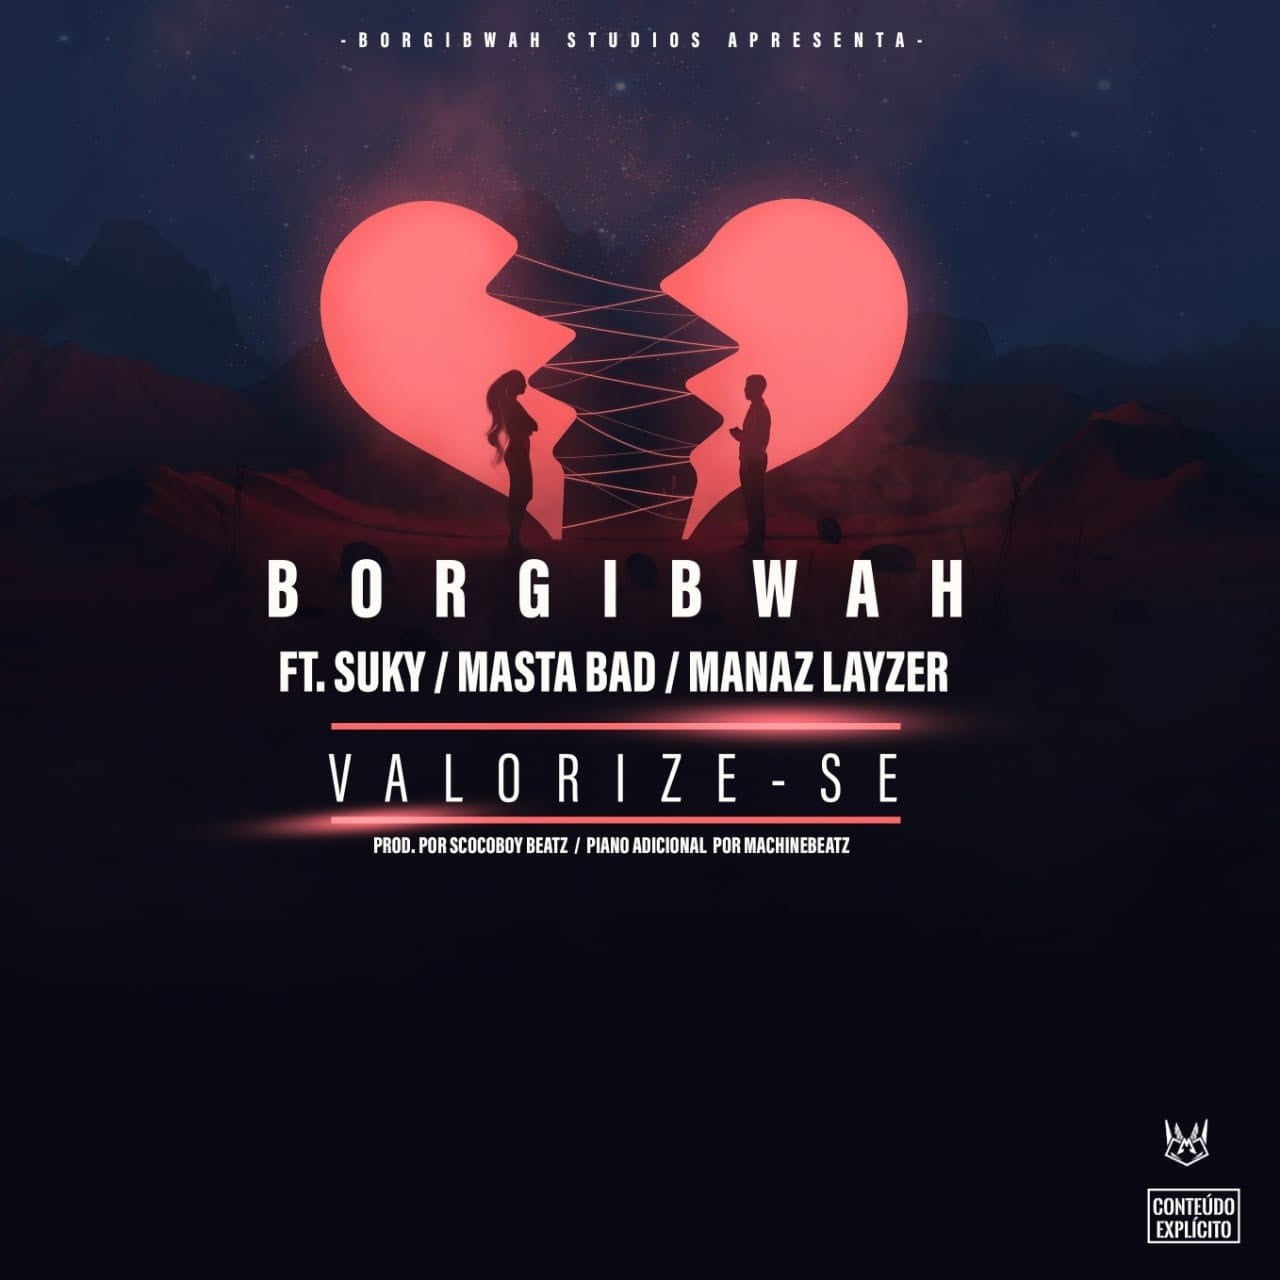 Borgibwah feat. Suky, Masta Bad & Manaz Layzer – Valorize-se